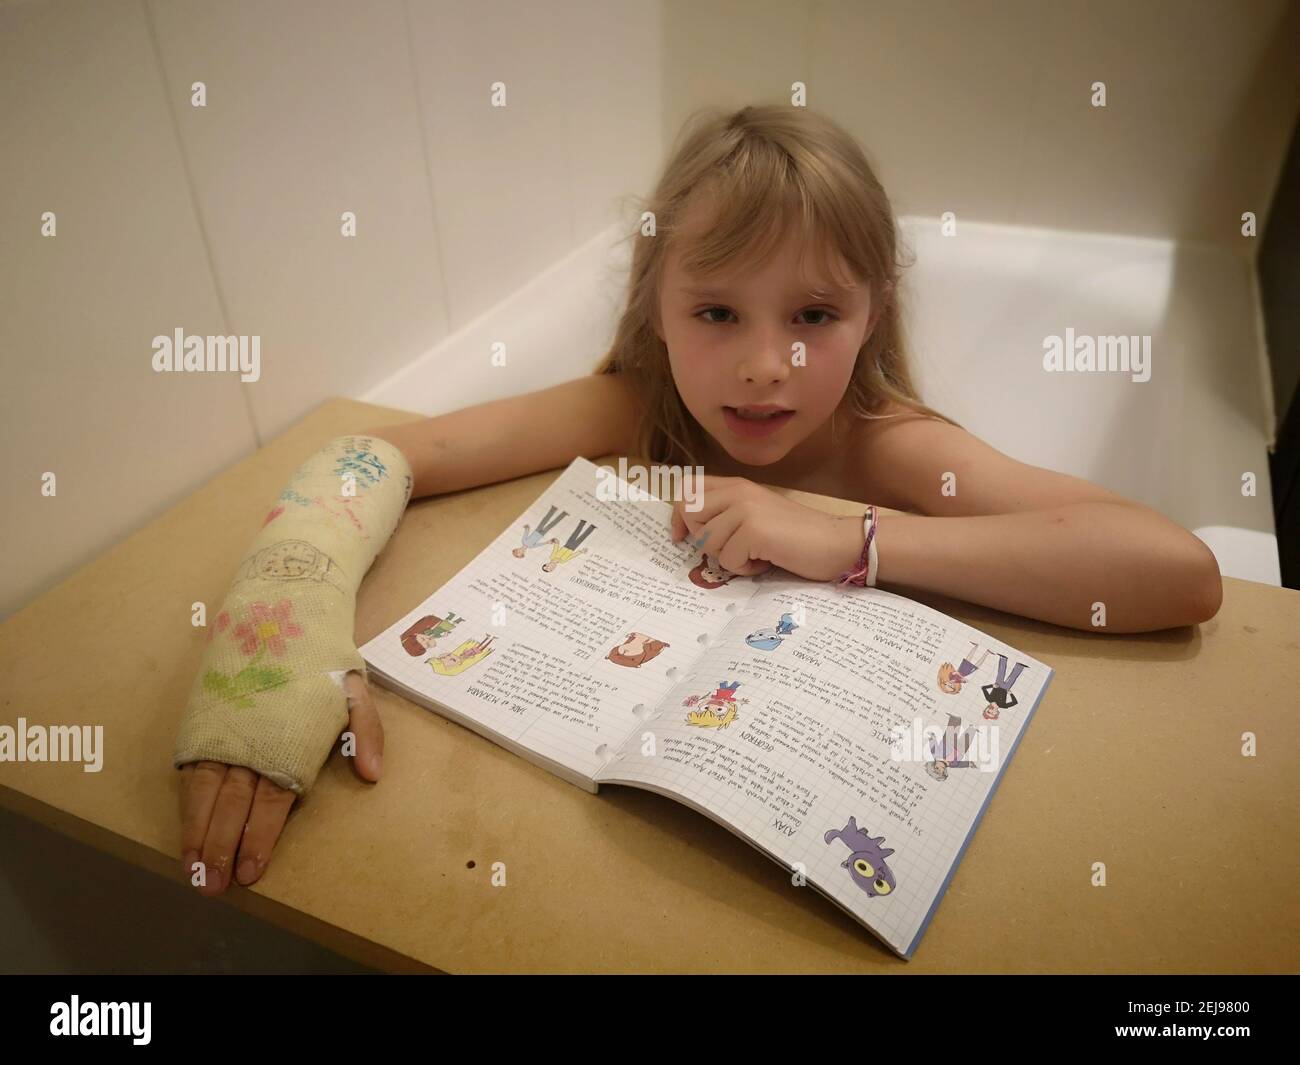 Portrait d'une fillette de 8 ans europÃ©enne au poignet cassÃ©, plÃ¢trÃ©e, lisant sur une tablette en bois un exercice dans son bain , France. Stock Photo